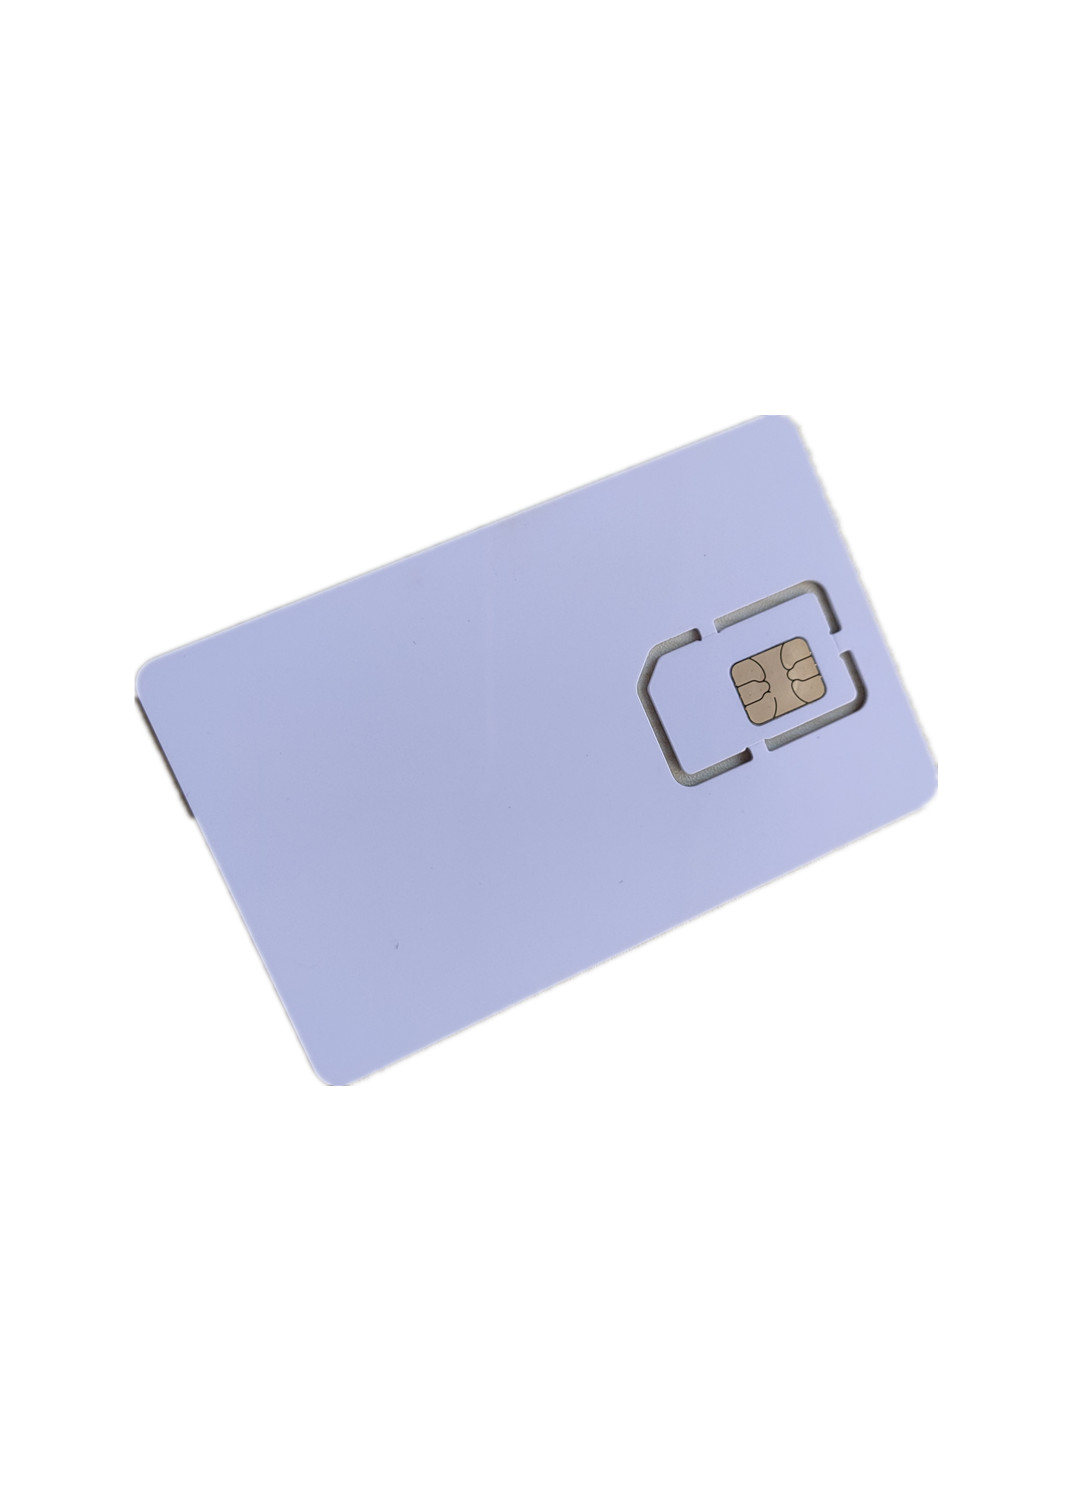 J3R150 6 PIN NXP JCOP 4 P71Java Card 卡6触点Nano SIM定制图片